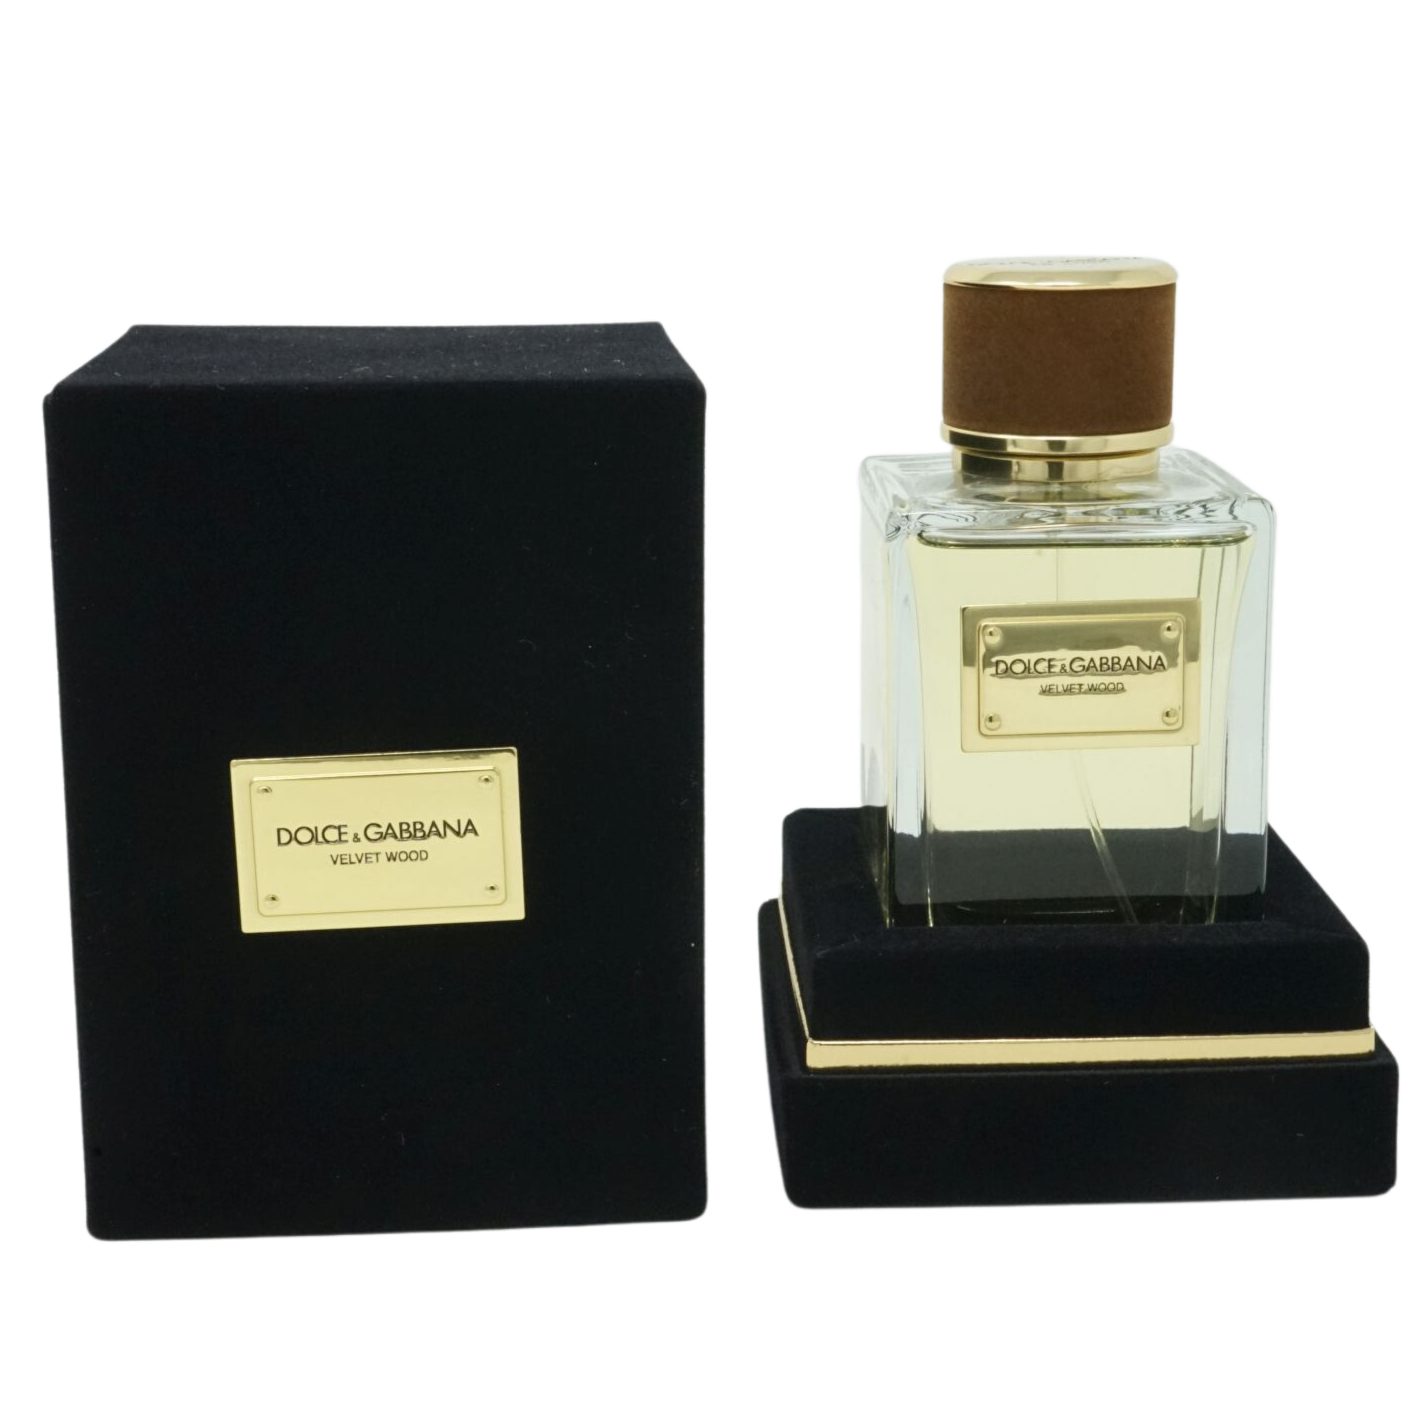 DOLCE & GABBANA Selbstbräunungstücher Dolce & Gabbana Velvet Wood Pour Homme Eau de Parfum Spray 150ml